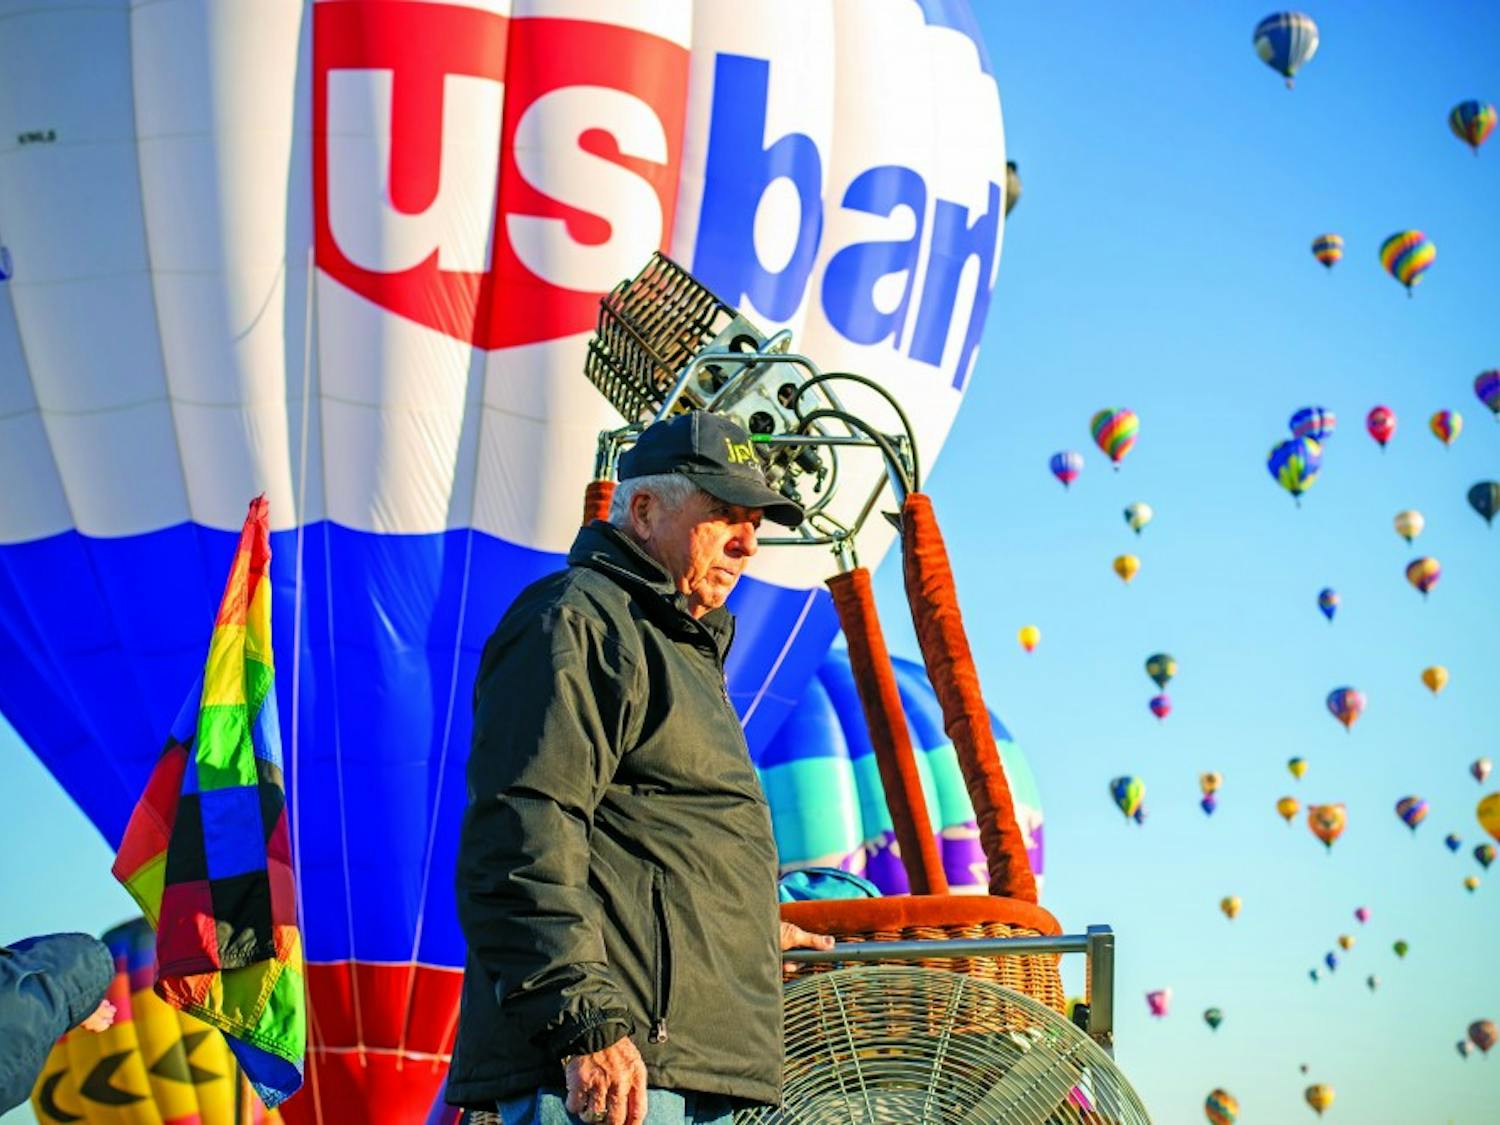 Balloon Fiesta 2019